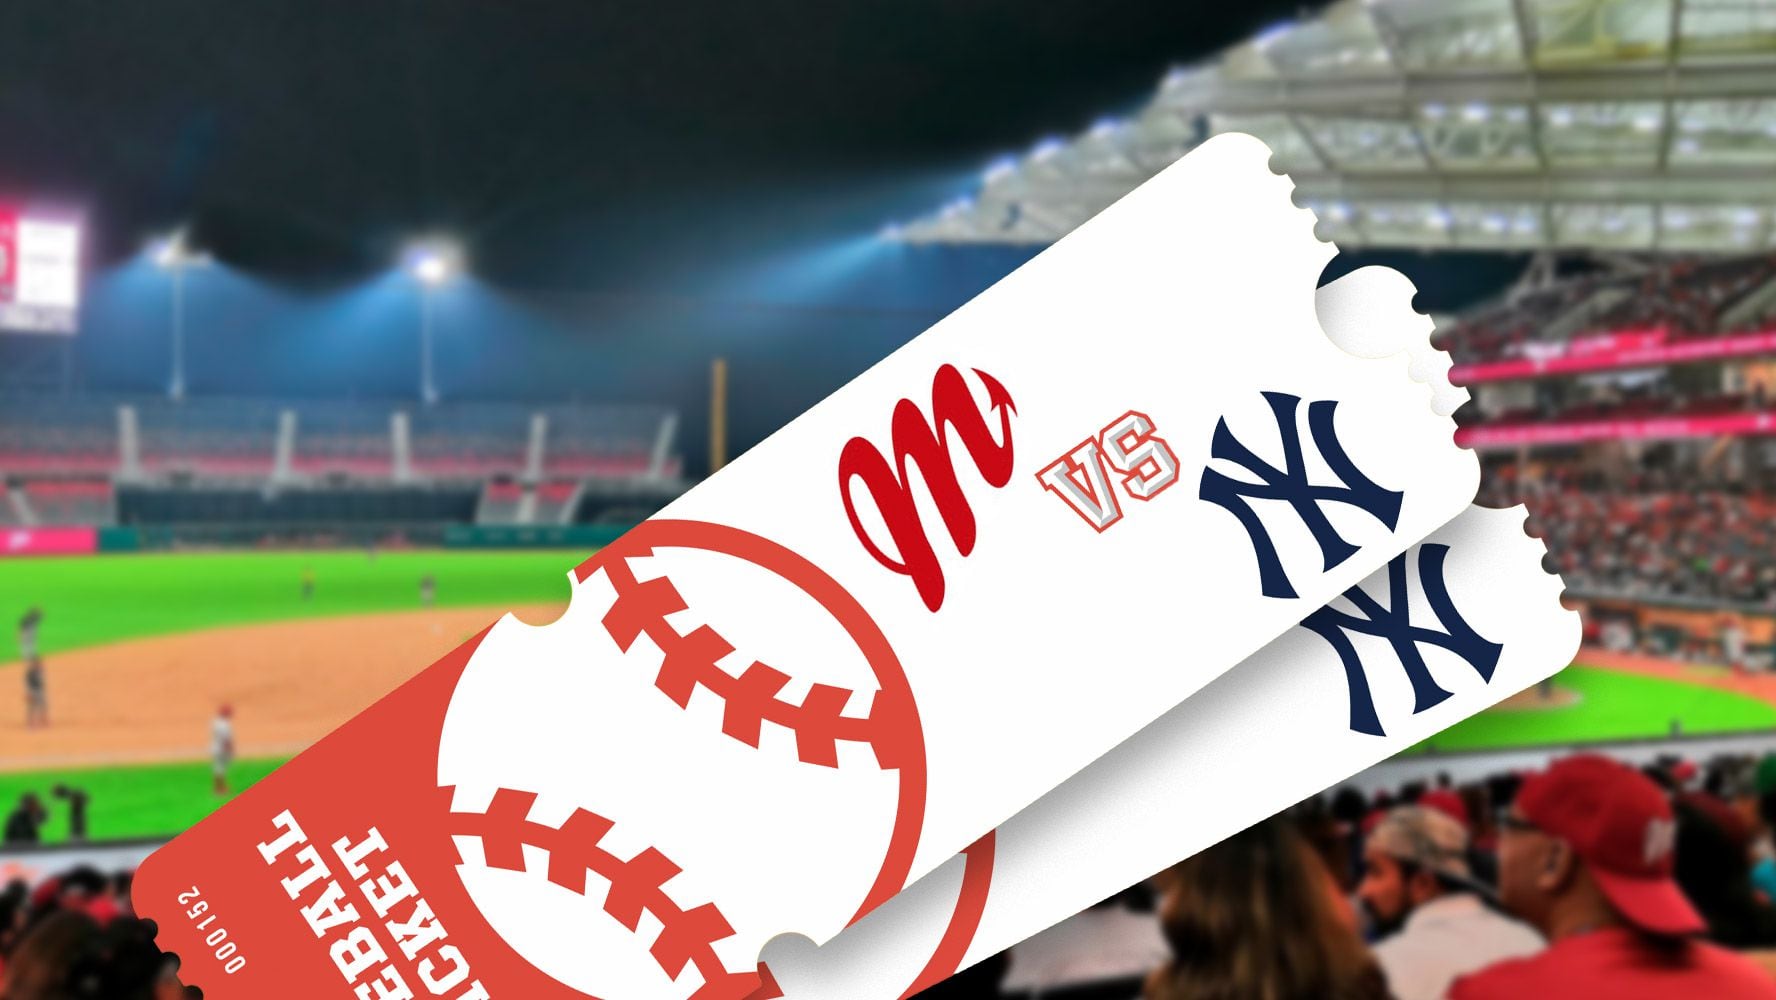 Venta de Yankees vs. Diablos Rojos: Boletos se agotaron en menos de una hora